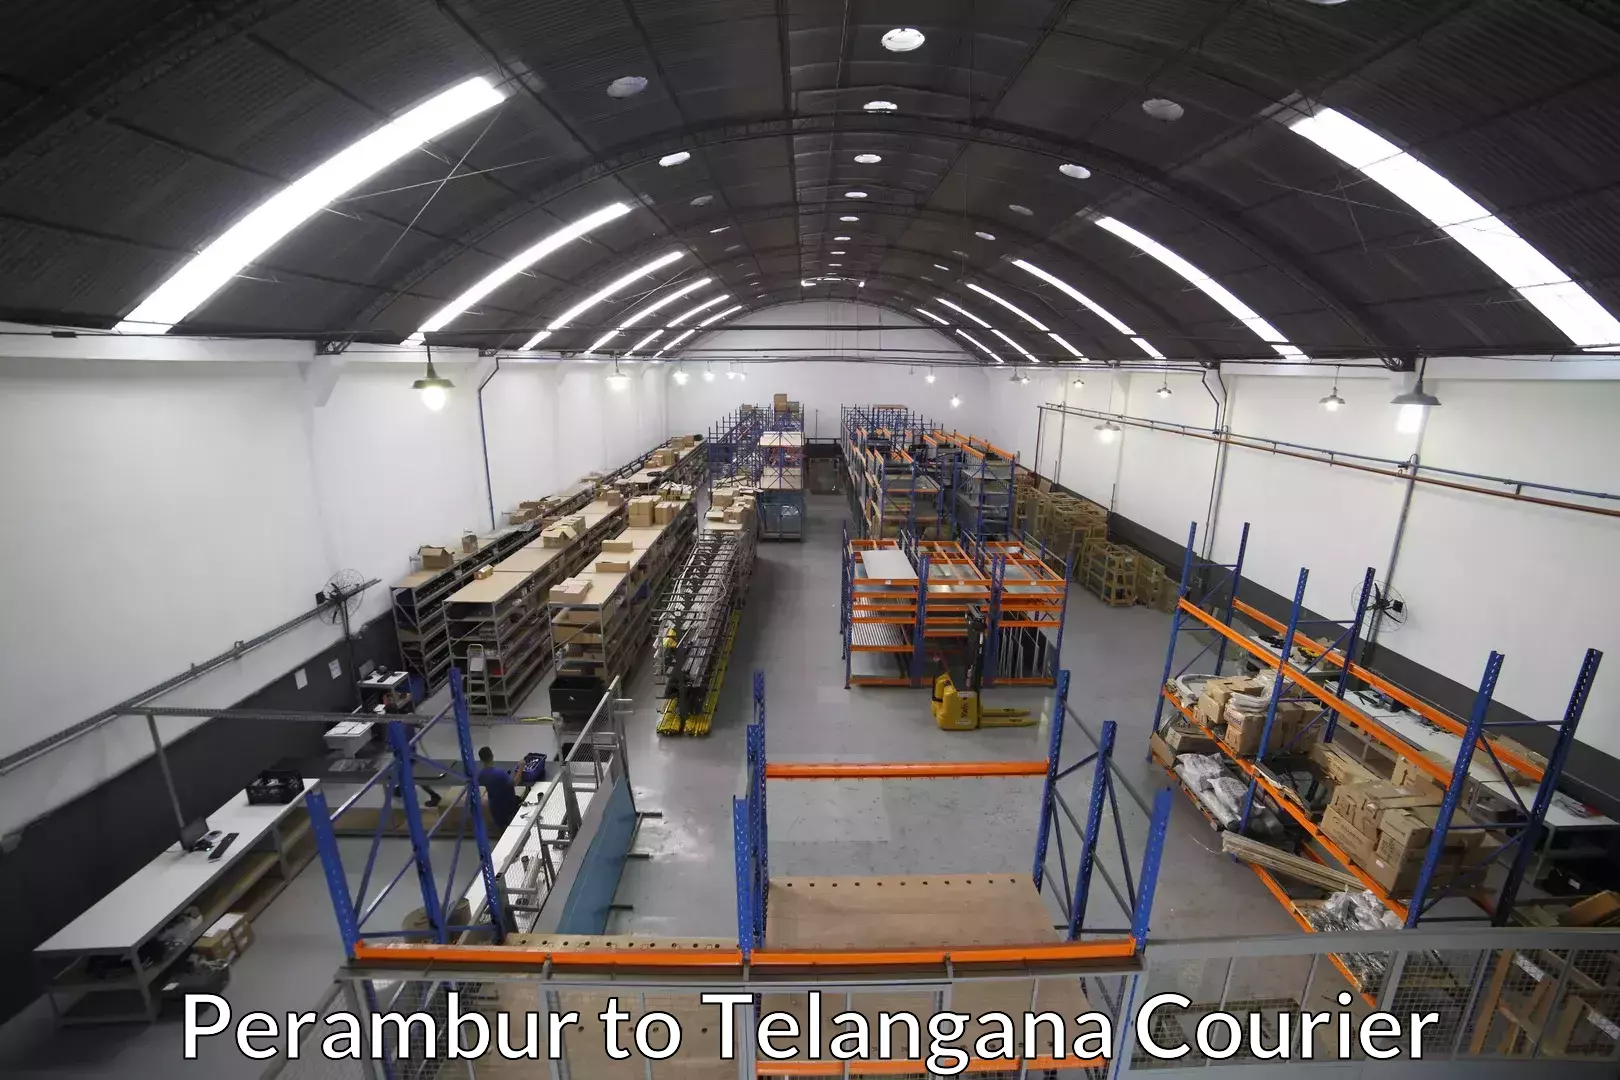 Efficient relocation services Perambur to Telangana